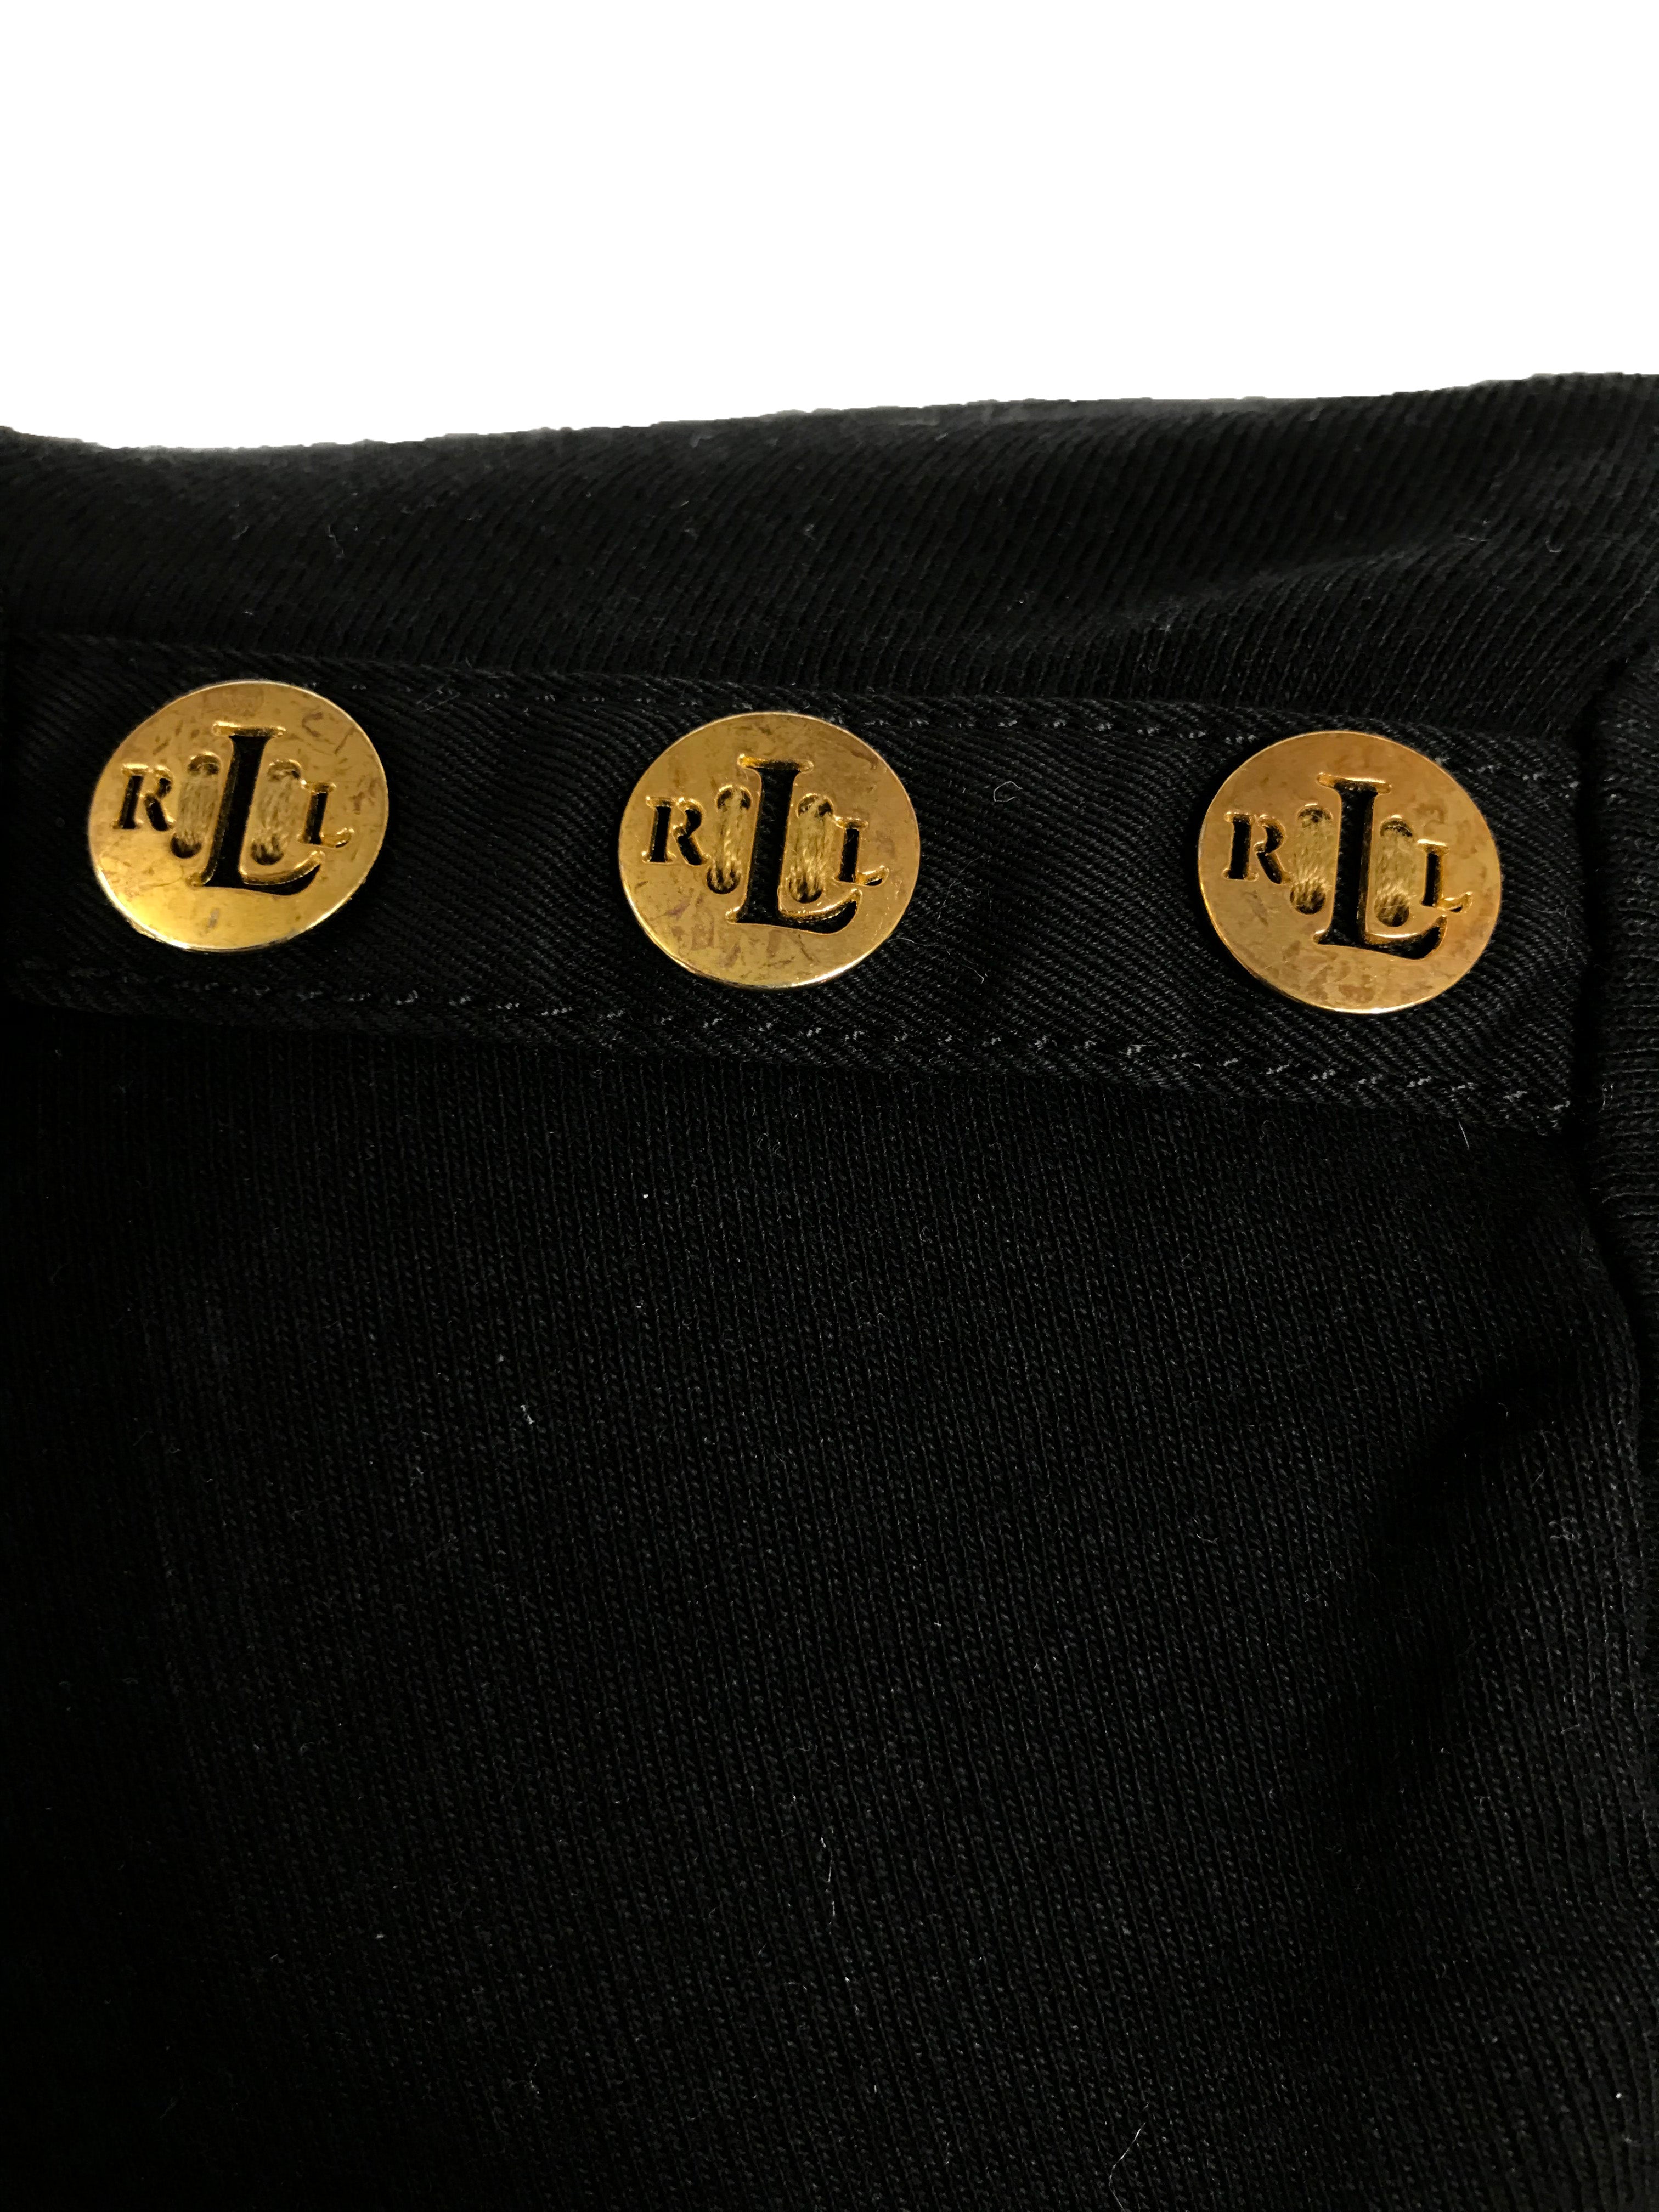 Ralph Lauren Black Long Sleeve Shirt Women's Size S